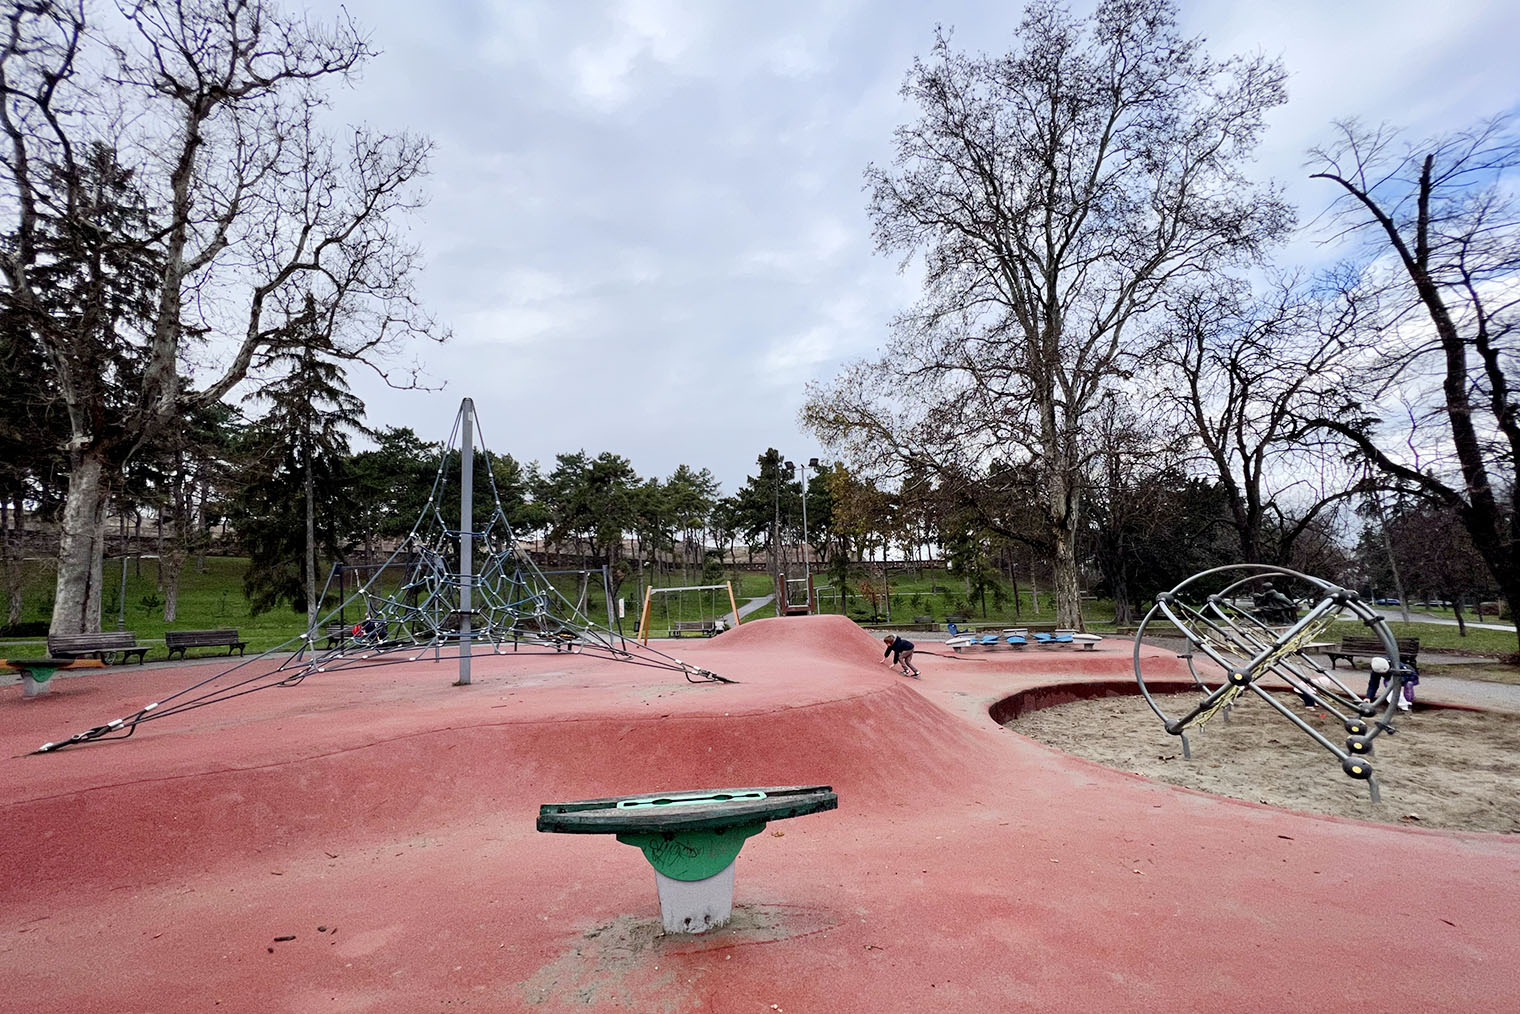 В парке «Калемегдан» несколько детских площадок. Наш ребенок заинтересовался той, что расположена недалеко от зоопарка